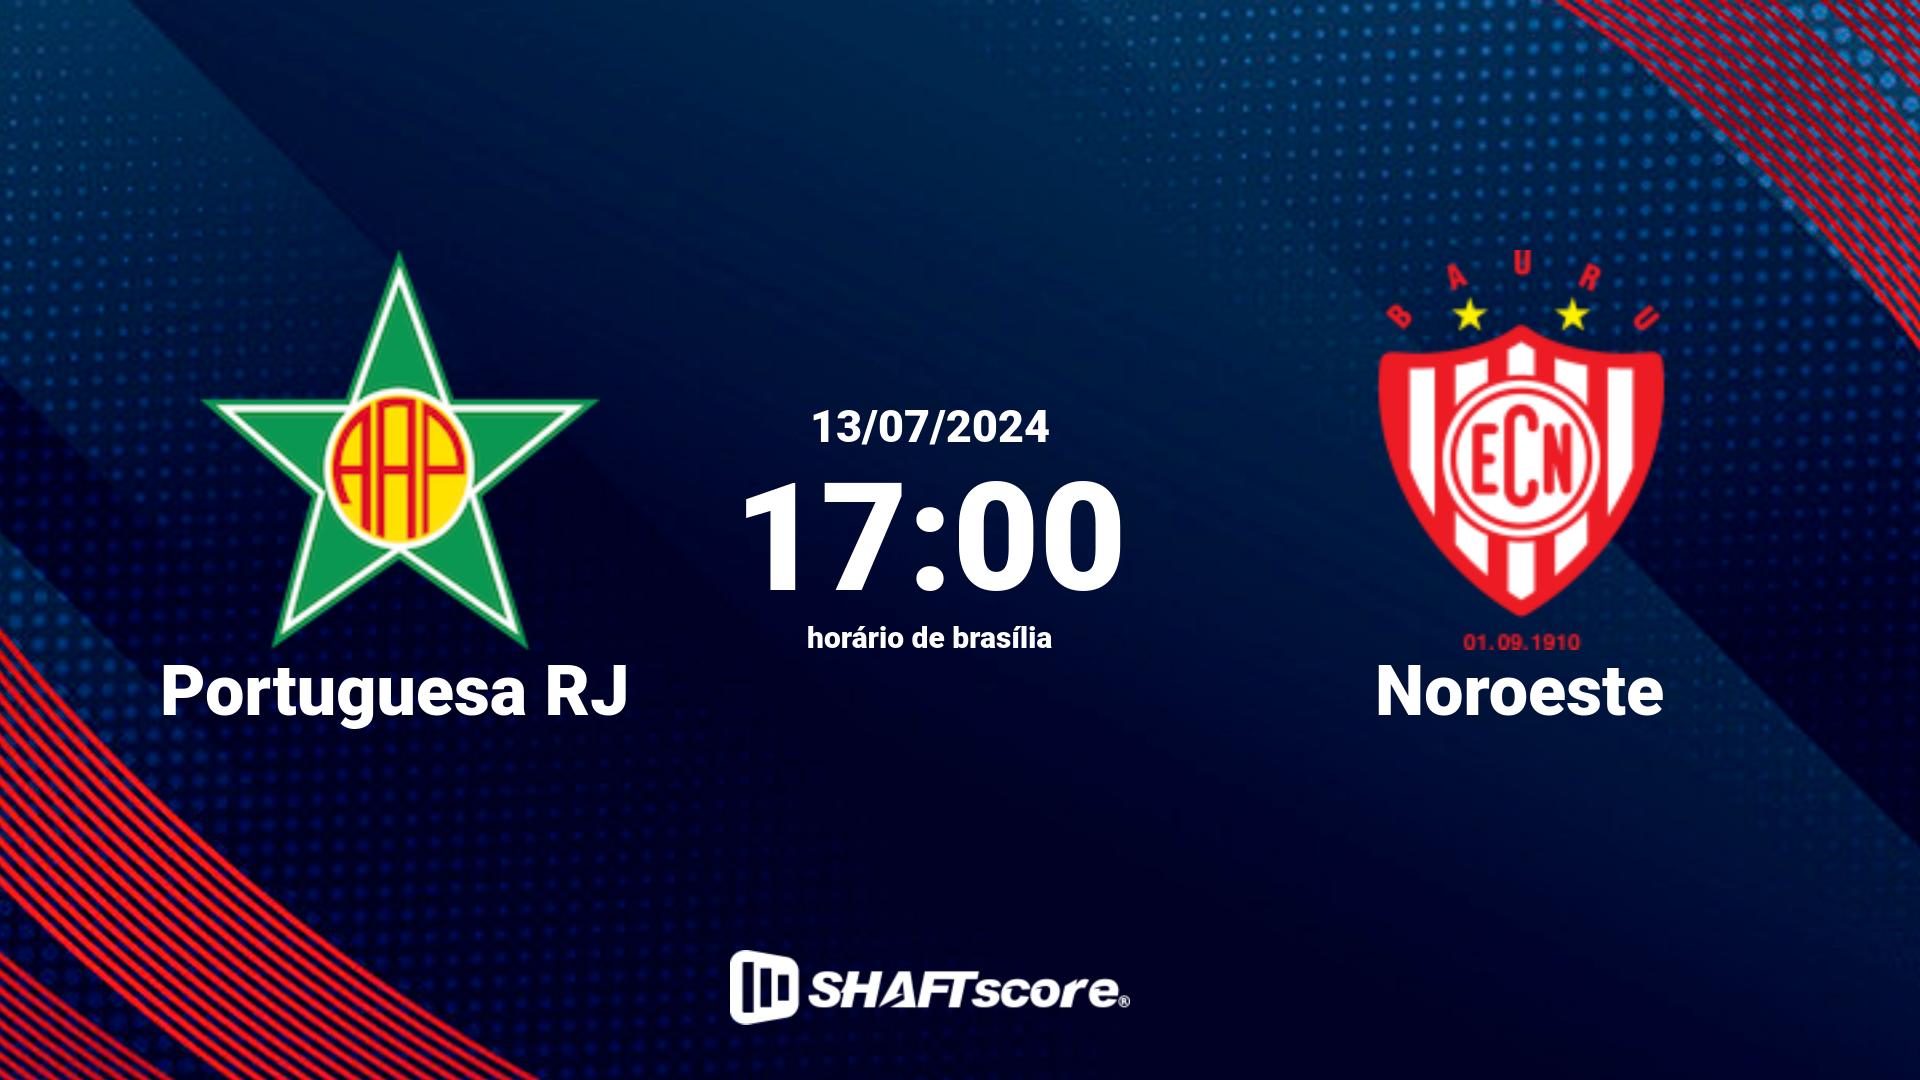 Estatísticas do jogo Portuguesa RJ vs Noroeste 13.07 17:00